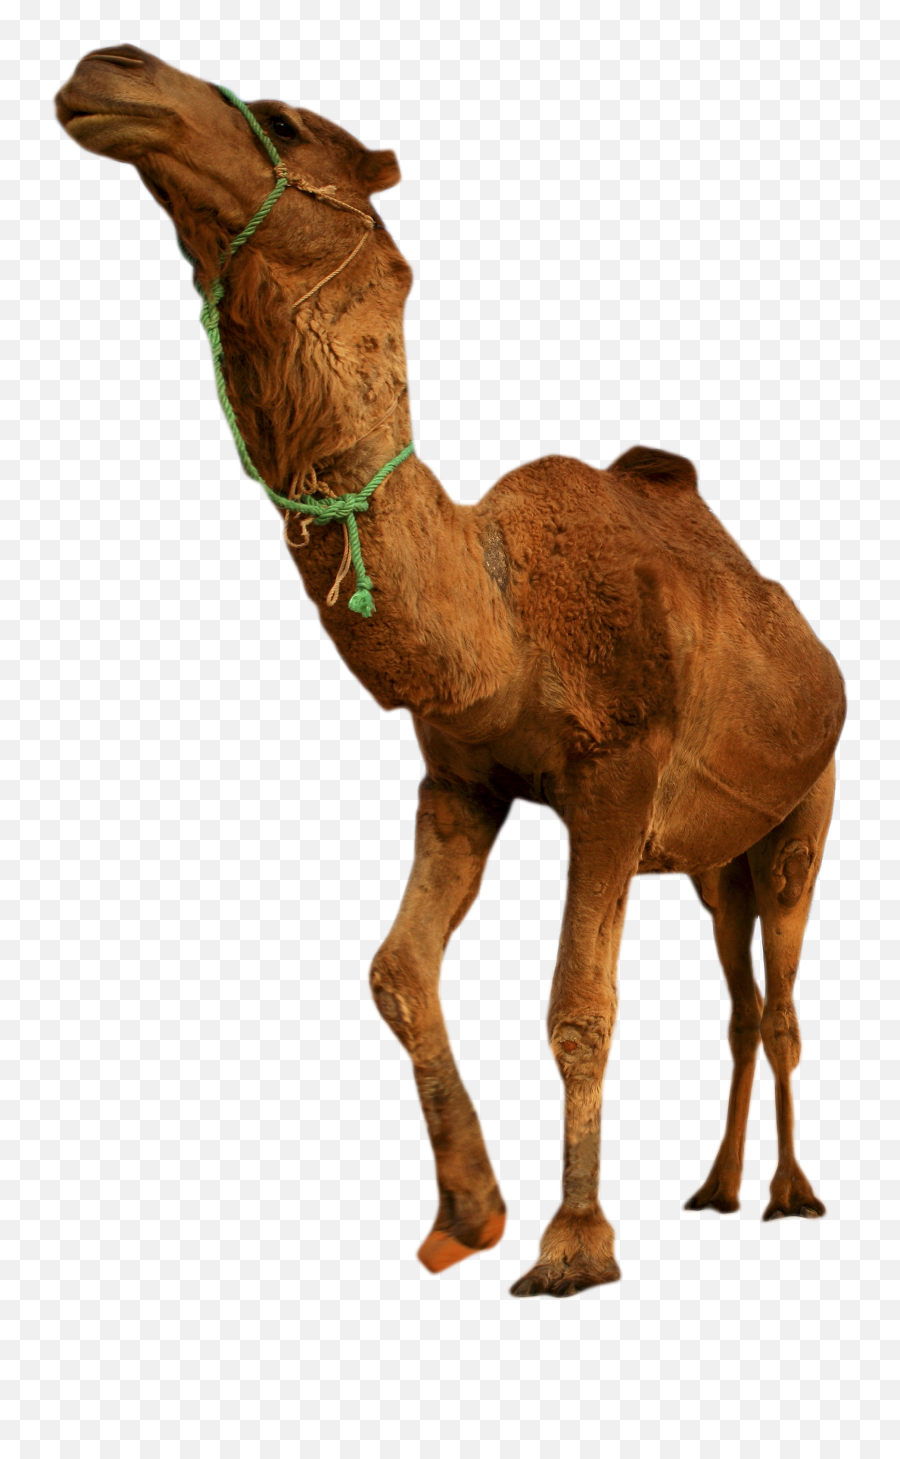 Desert Camel Standing Png Image - Desert Animals Png,Camel Png